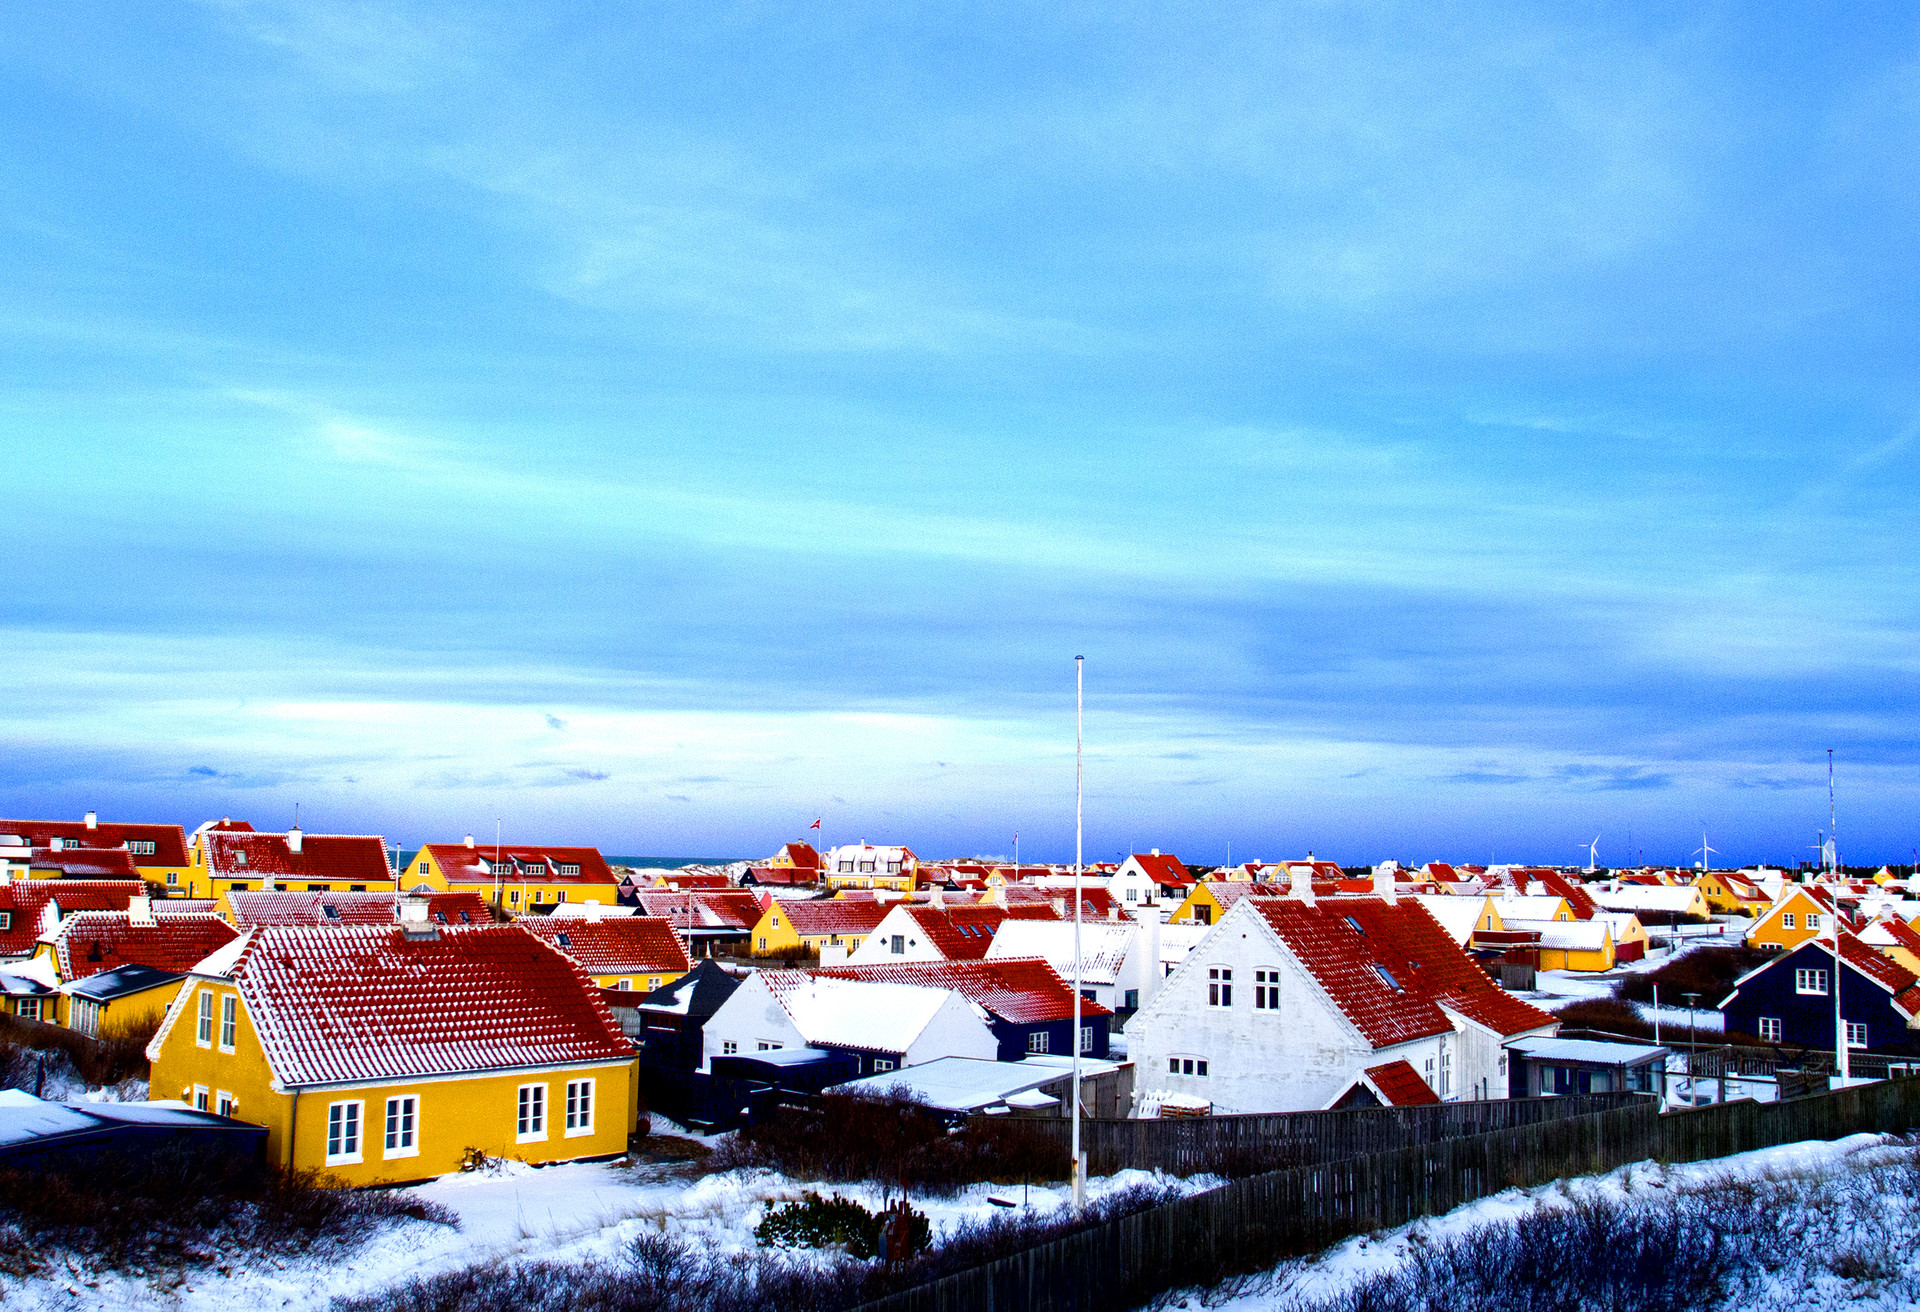 Winter view over houses in Skagen Denmark.